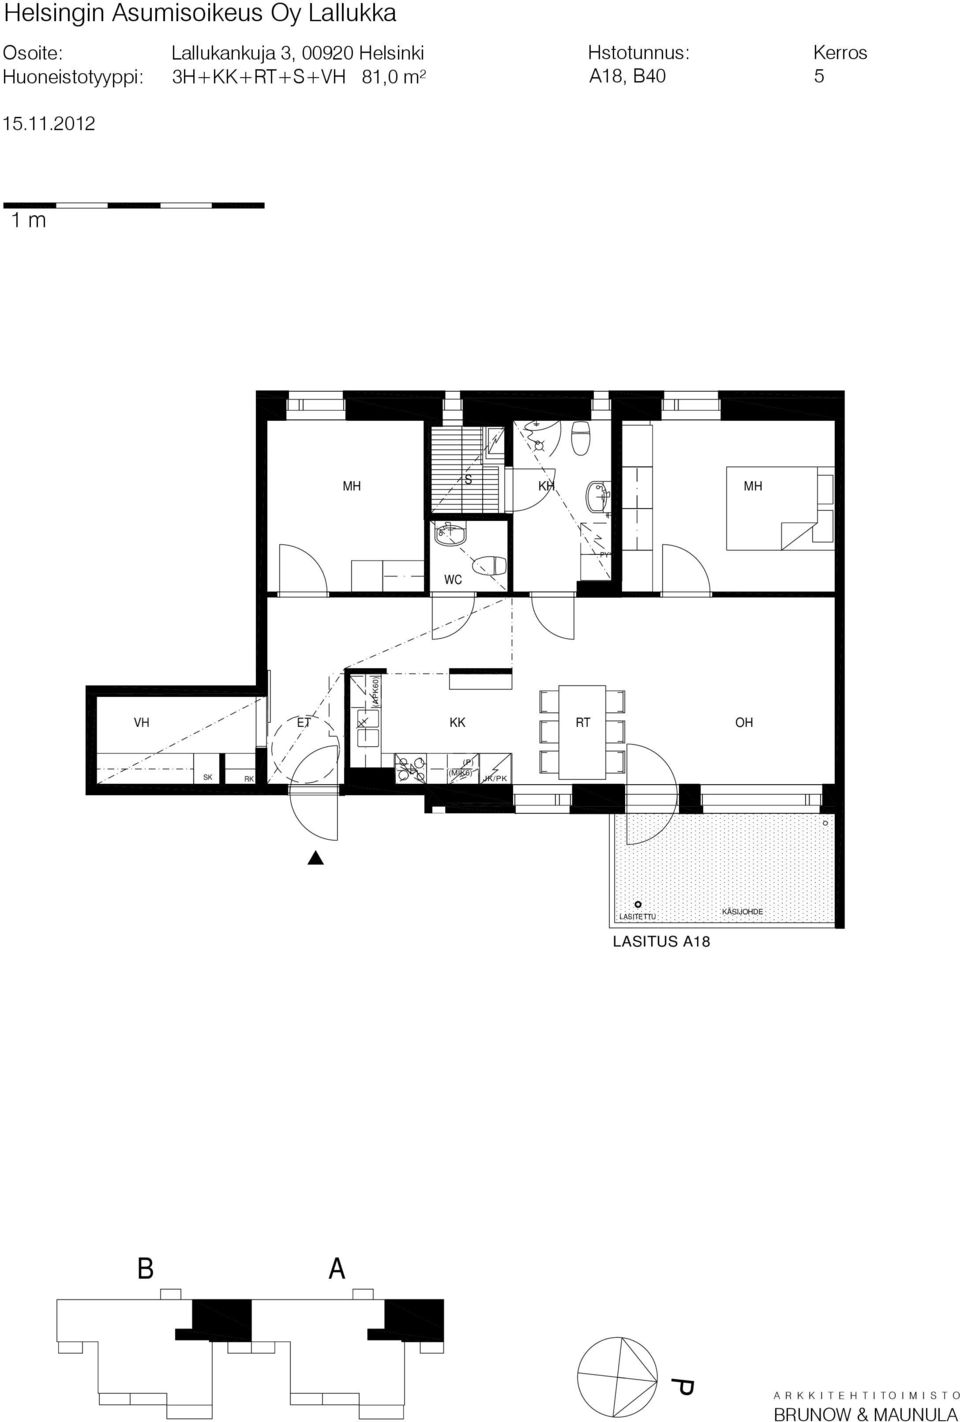 81,0 m² 18, 40 5 (K60) HII 3 () ITTU ITU 18